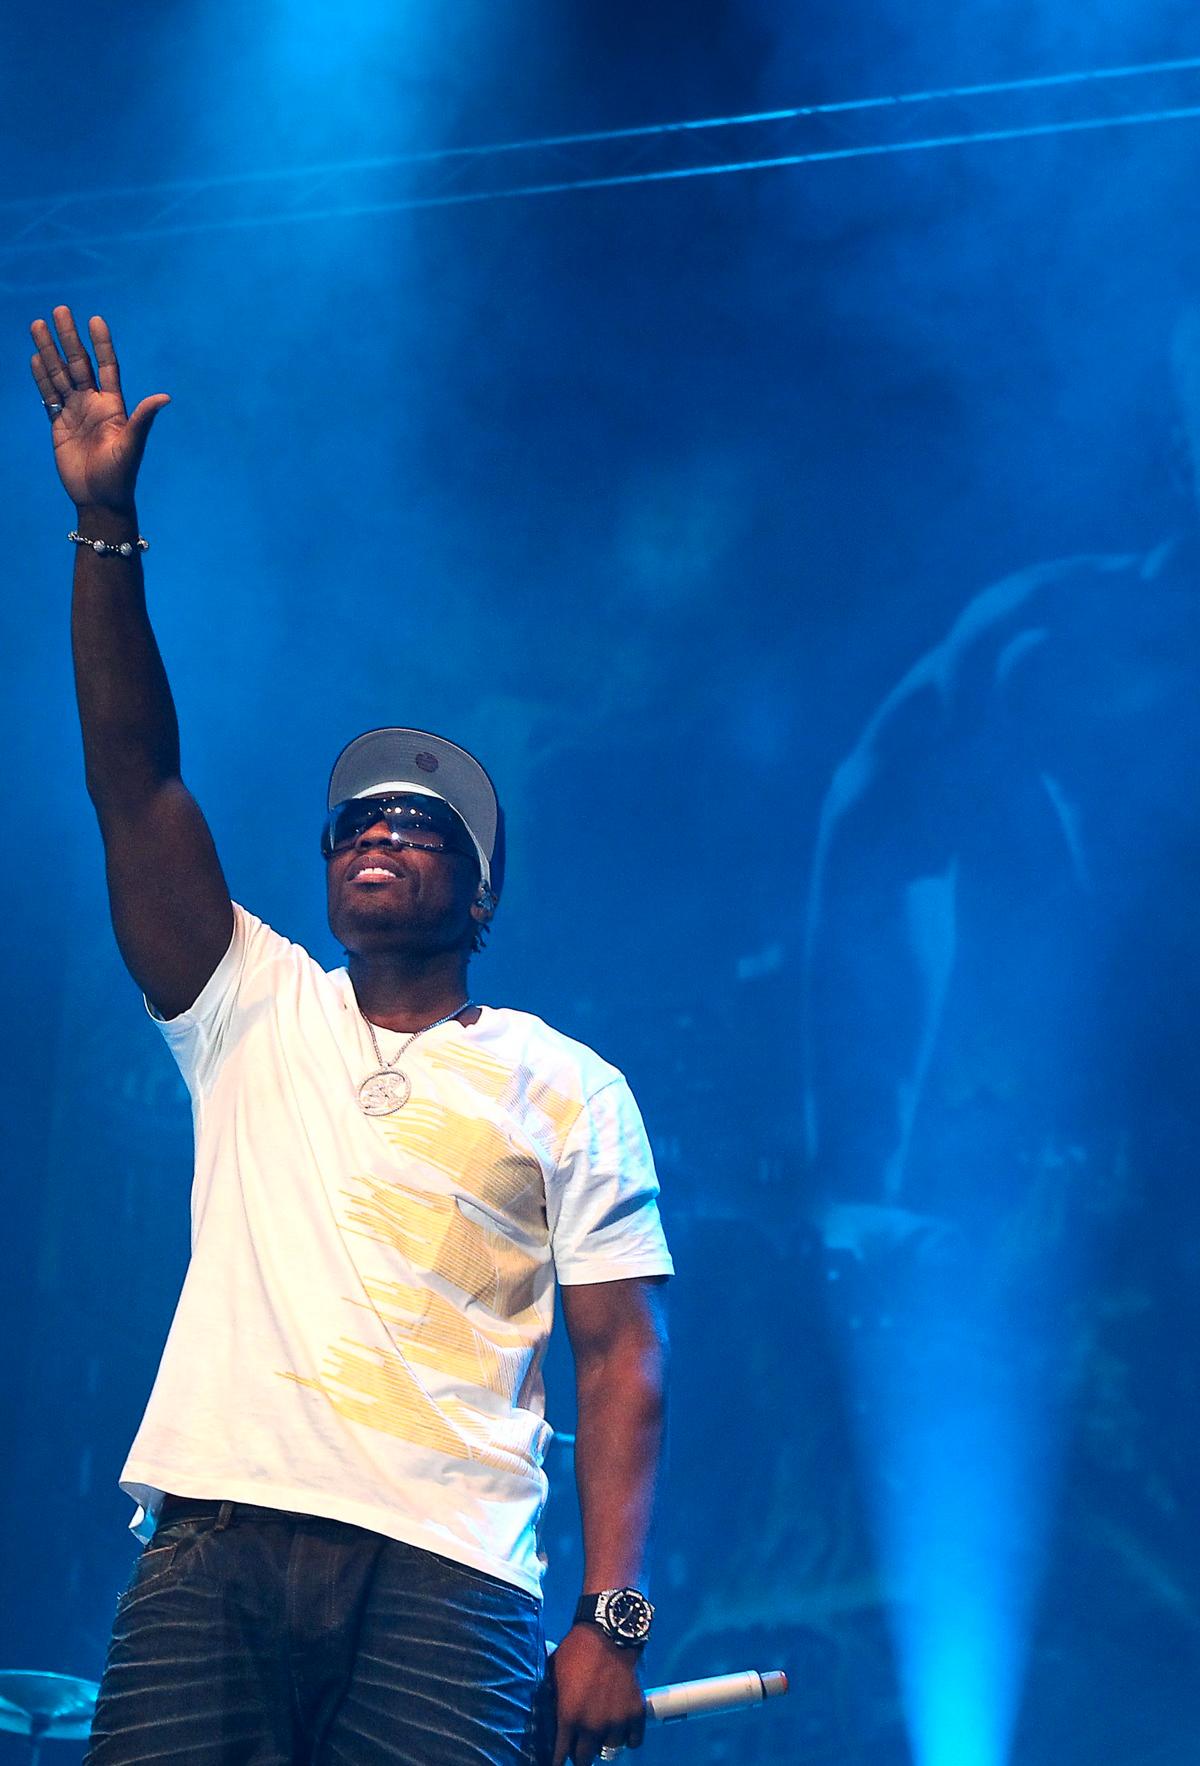 LIKA BILLIG SOM SITT NAMN 50 Cent är inte längre samma artist som gjorde den hyllade debutskivan ”Get rich or die tryin’” 2003.